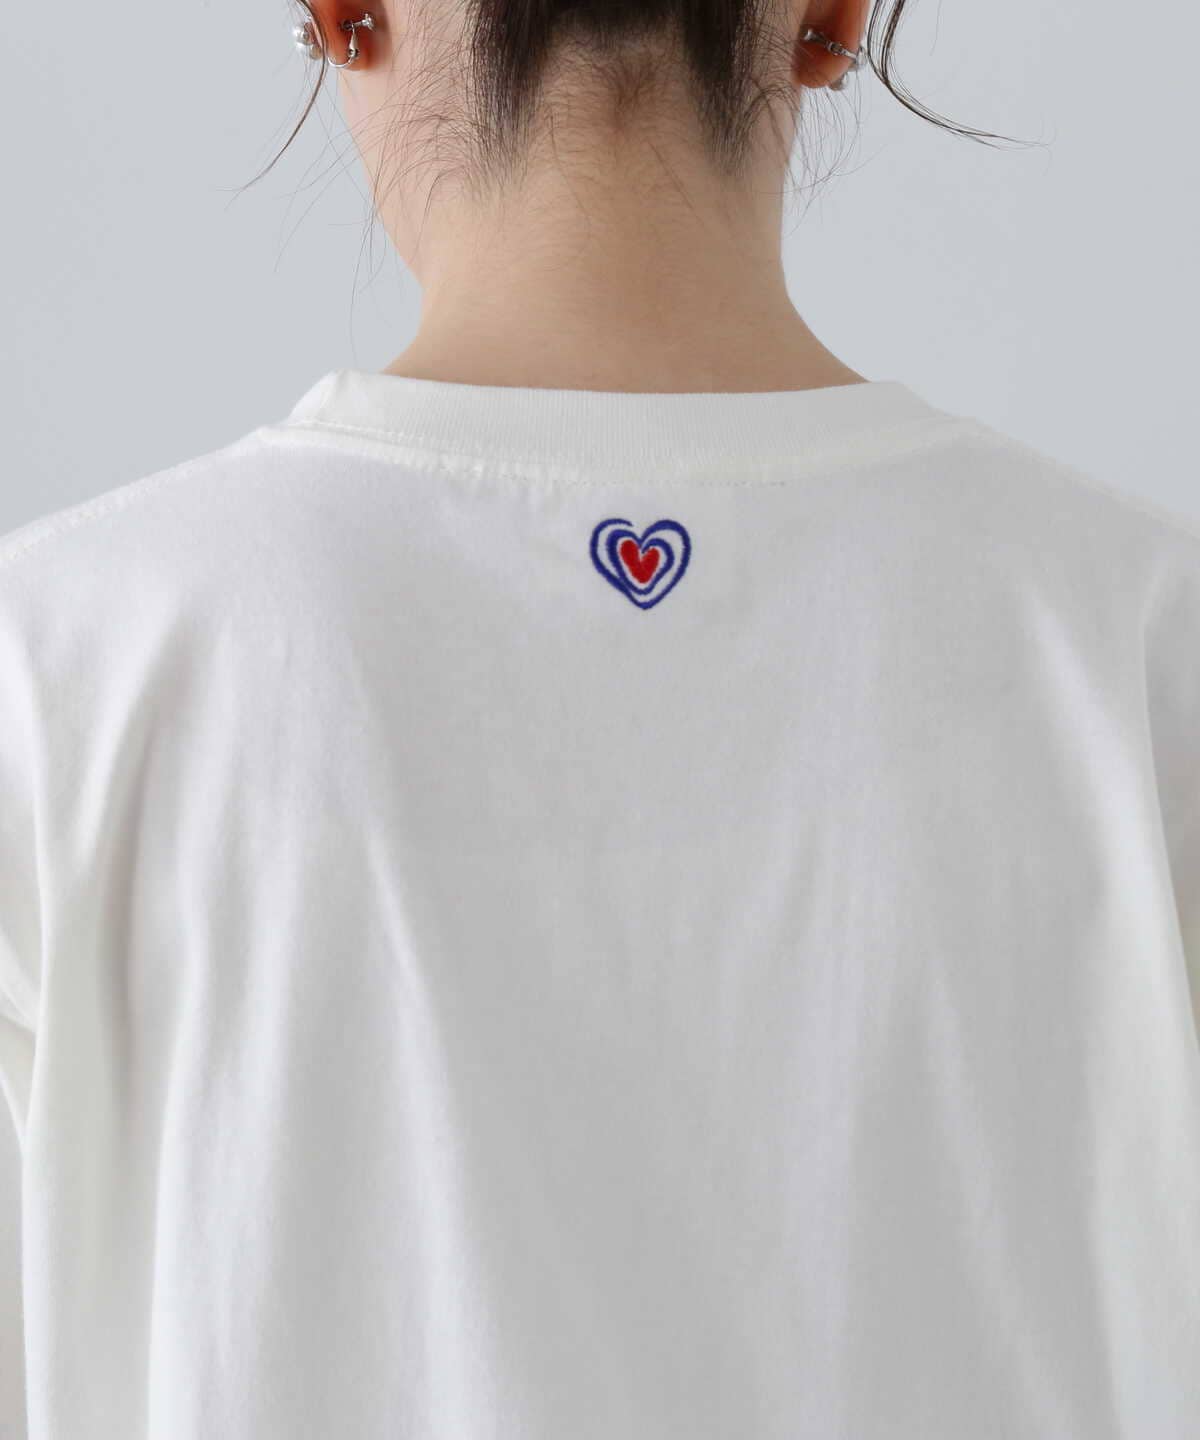 KAPSUL Tシャツ《WEB・一部店舗限定商品》《S Size Line》